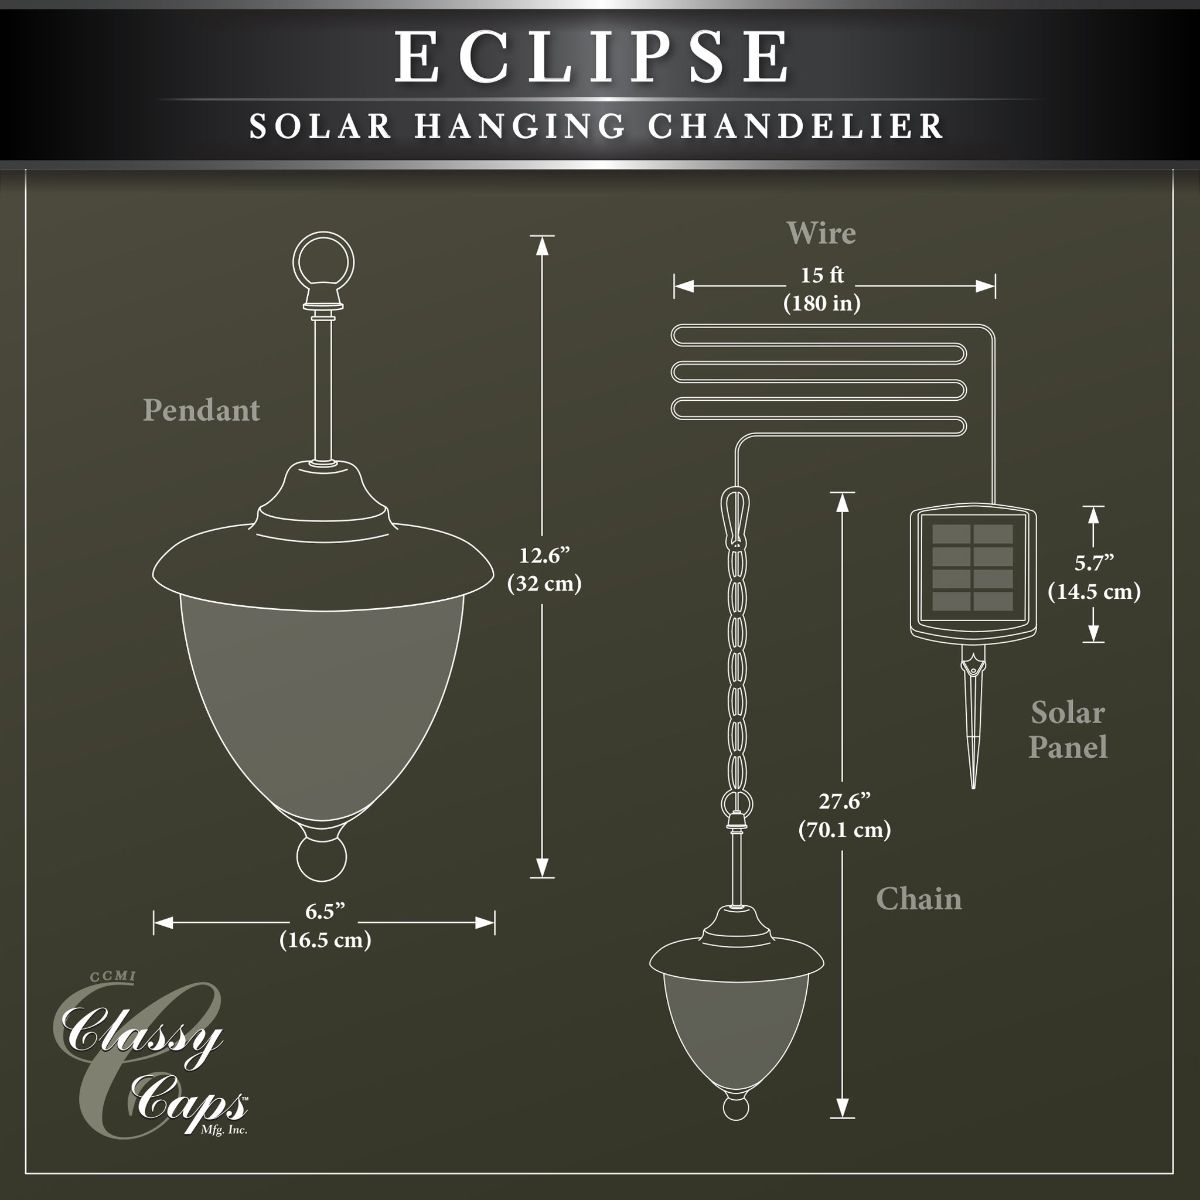 Eclipse Solar LED Outdoor Chandelier 4500K Black finish